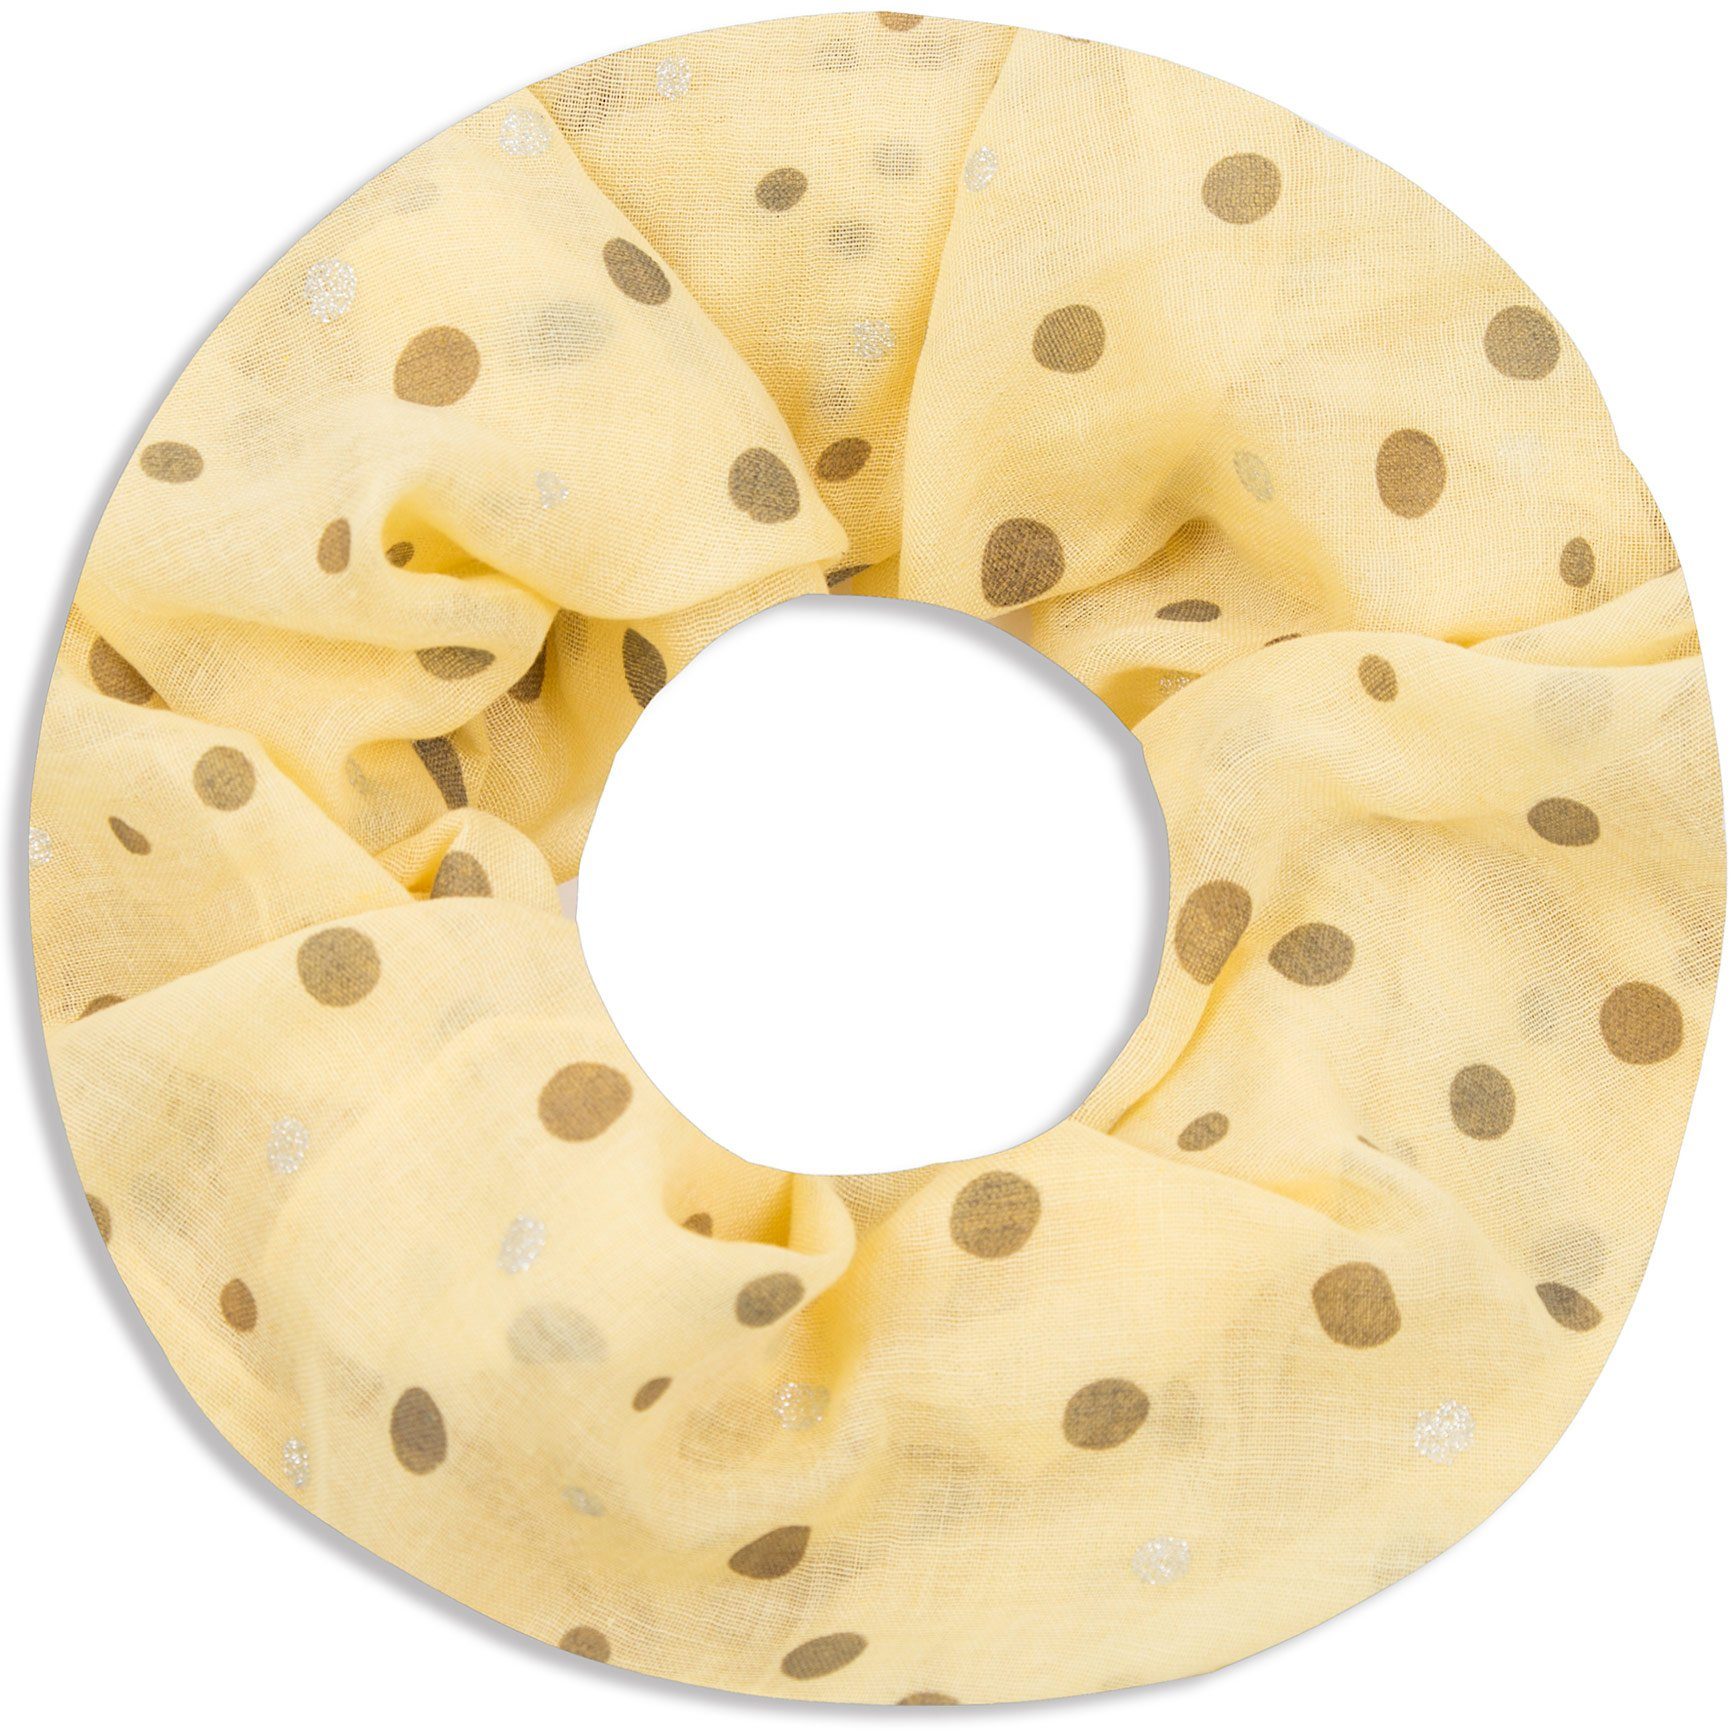 Faera Loop, Damen Schal luftig und weich mit erfrischendem Punkt-Muster Loopschal Rundschal gelb